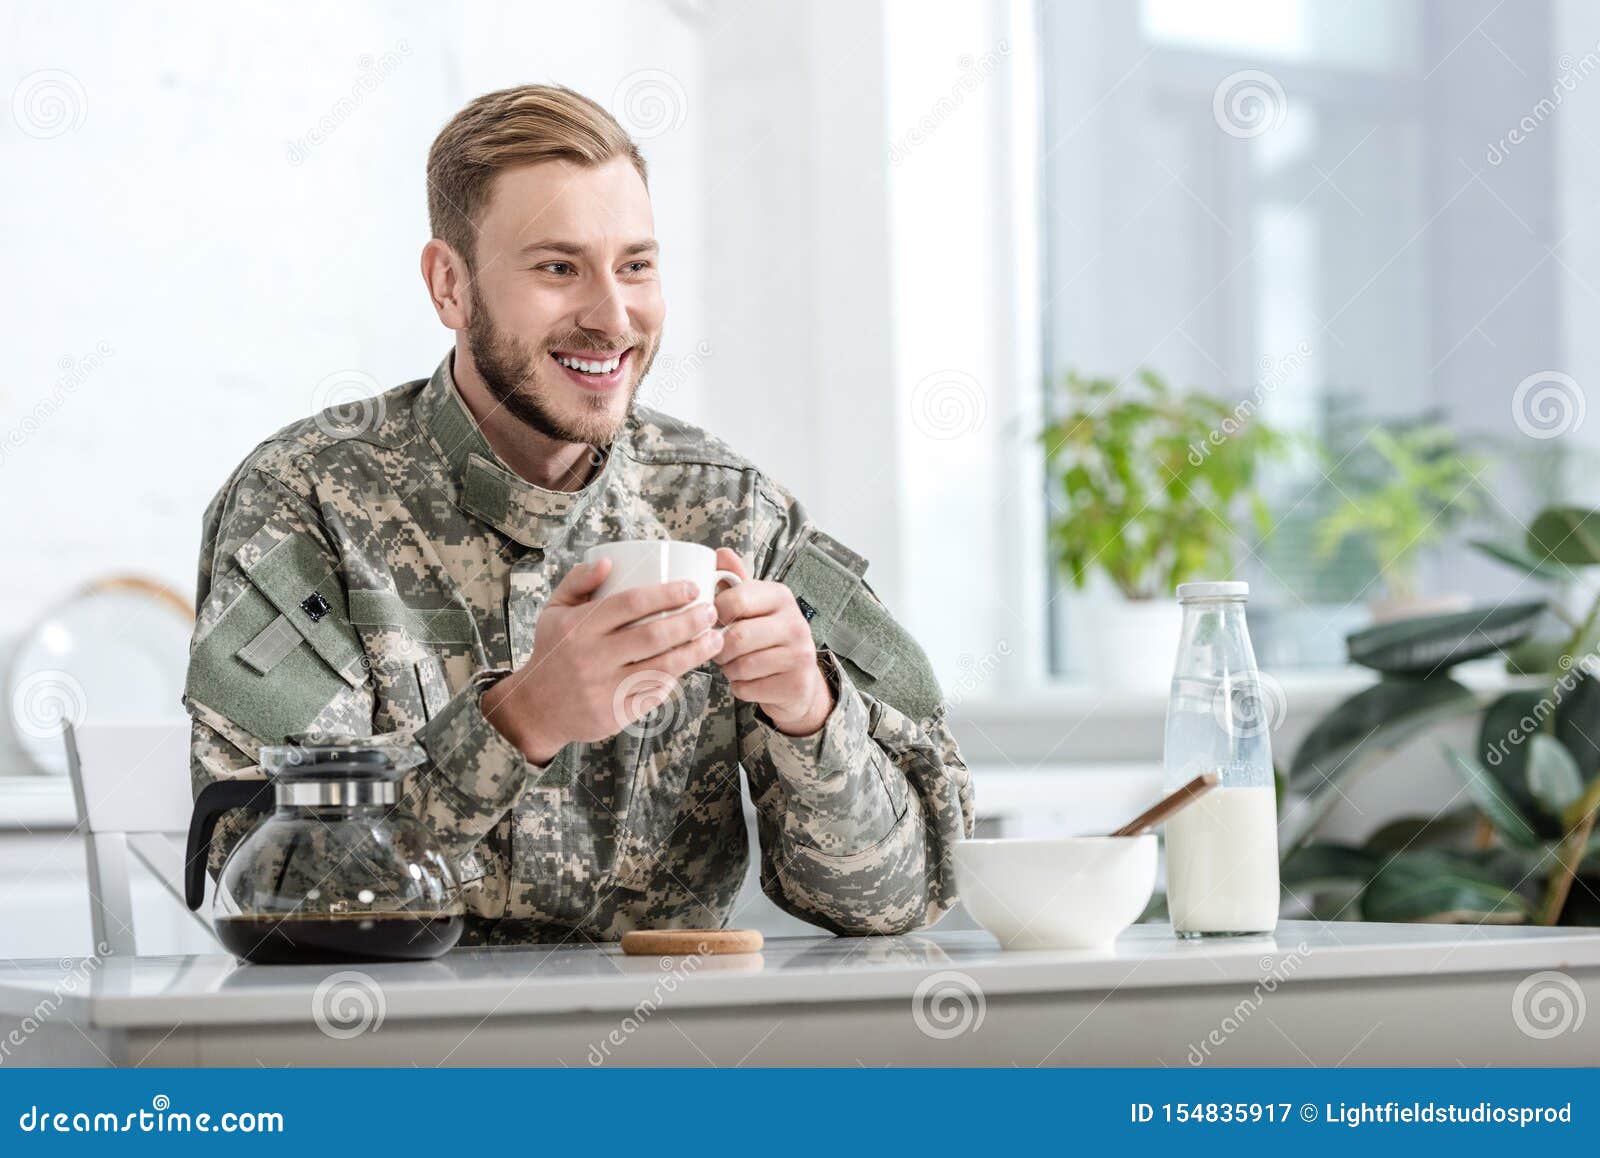 Армейской кофе. Военный с кофе. Военный пьет кофе. Кофе для солдата. Солдат пьет кофе.